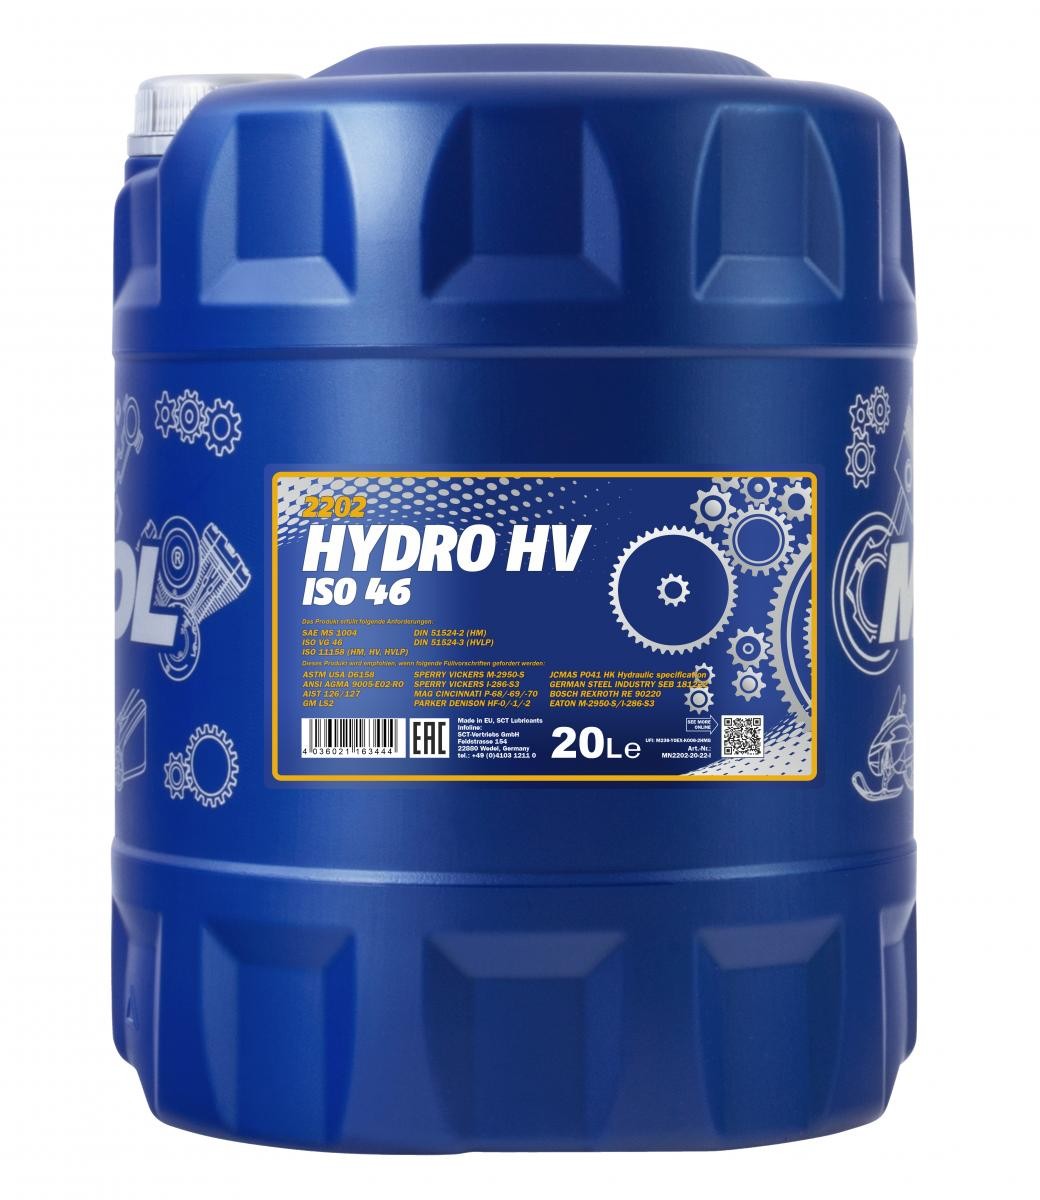 MANNOL Hydro HV ISO 46, ISO VG 46 Zentralhydrauliköl MN2202-20 kaufen